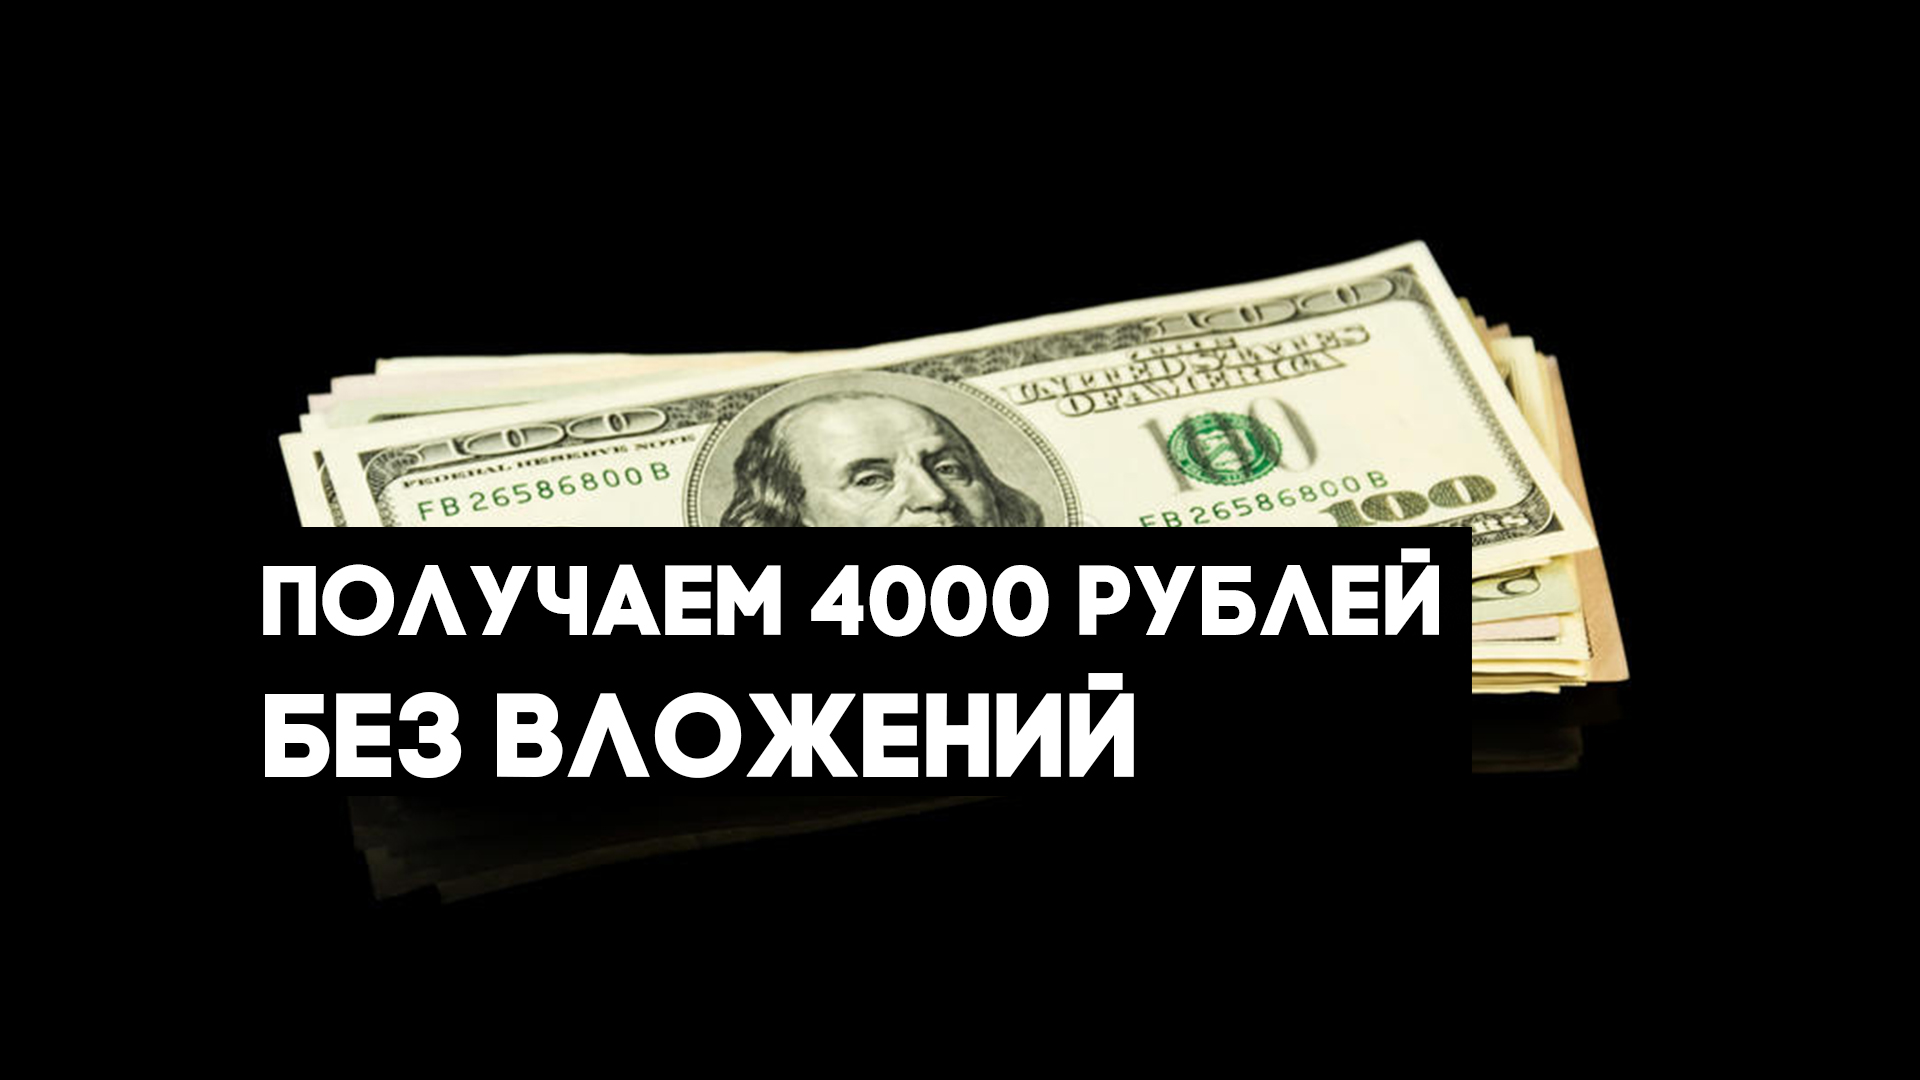 Телеграмм заработок денег без вложений на русском языке фото 106